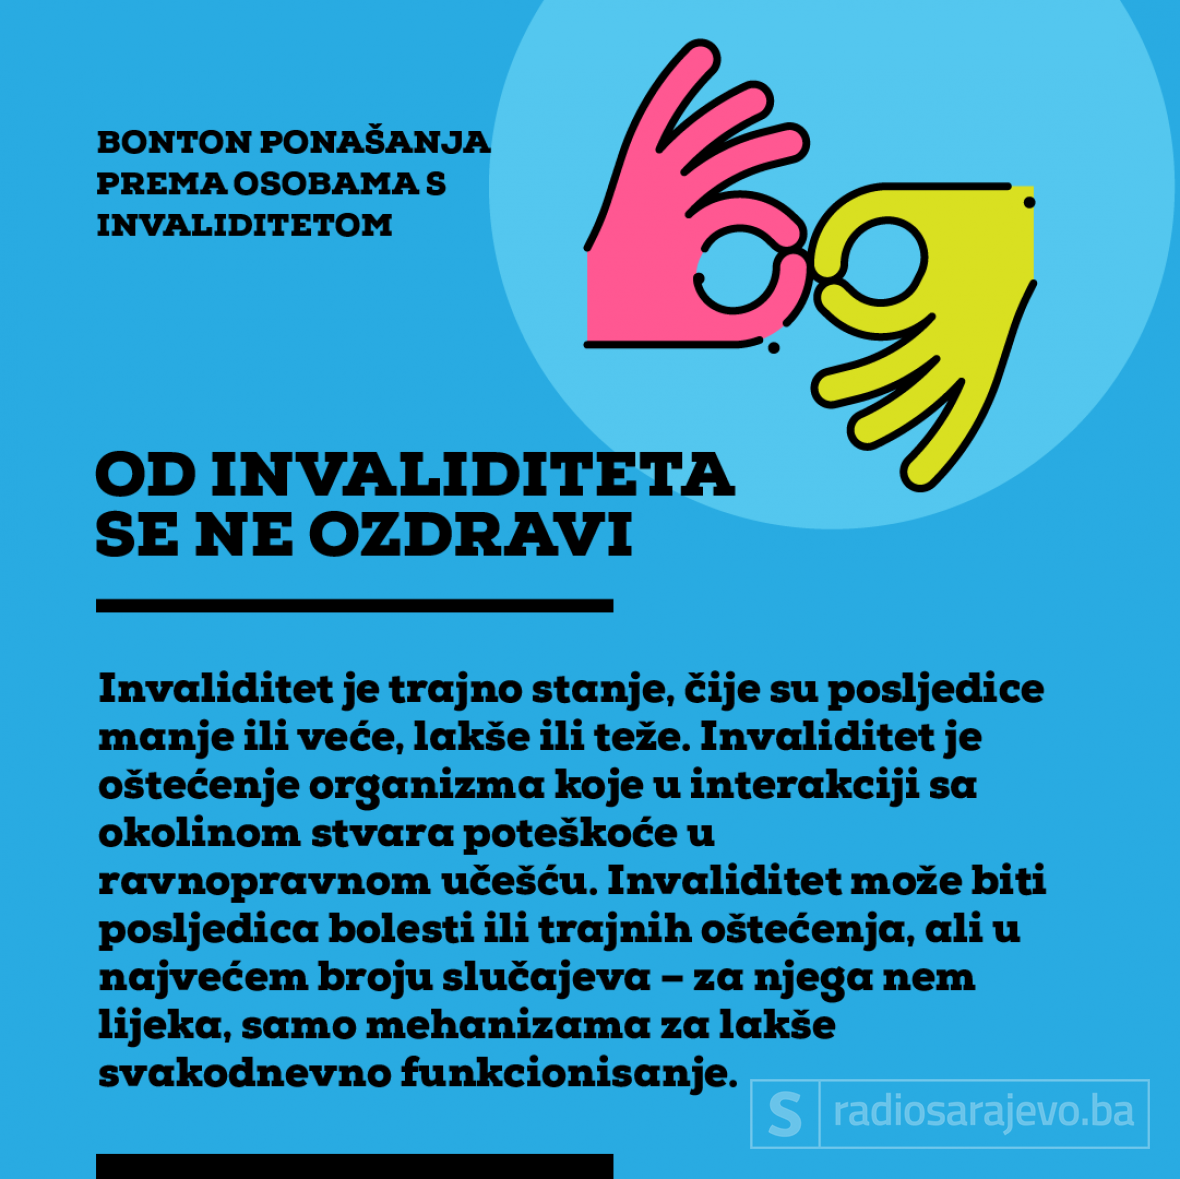 Ilustracija: Azra Kadić, Radiosarajevo.ba /Bonton ponašanja prema osobama s invalididtetom 